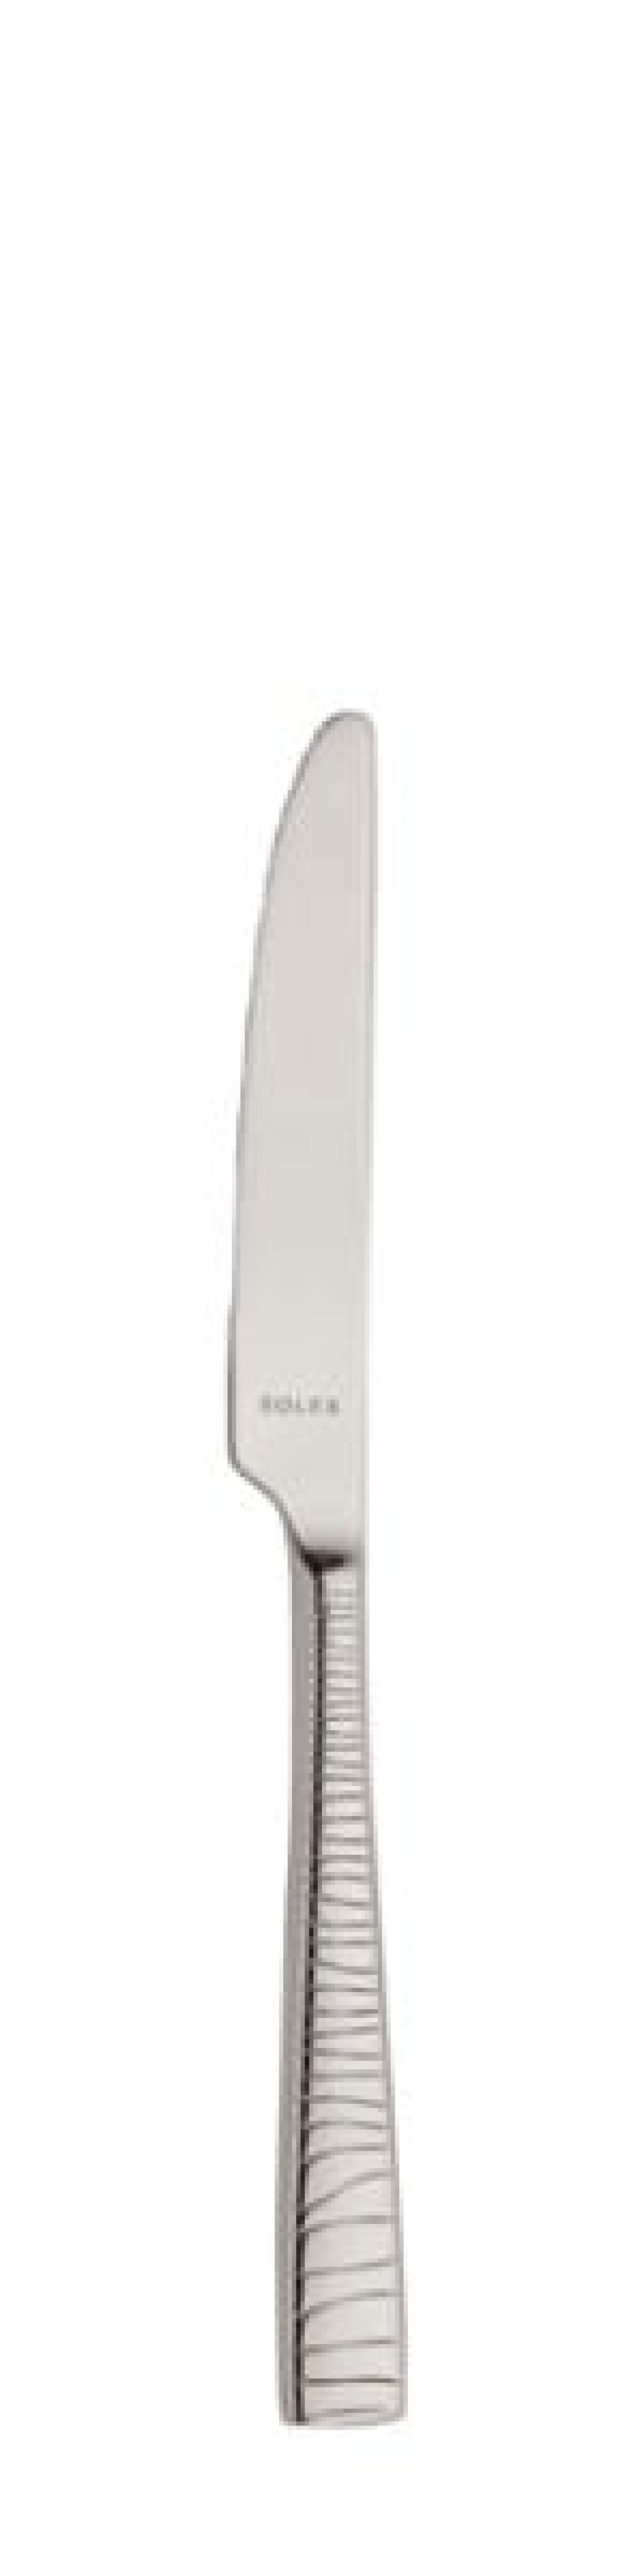 Alexa Dessertmesser 213 mm - Solex in der Gruppe Tischgedeck / Besteck / Messer bei The Kitchen Lab (1284-21676)